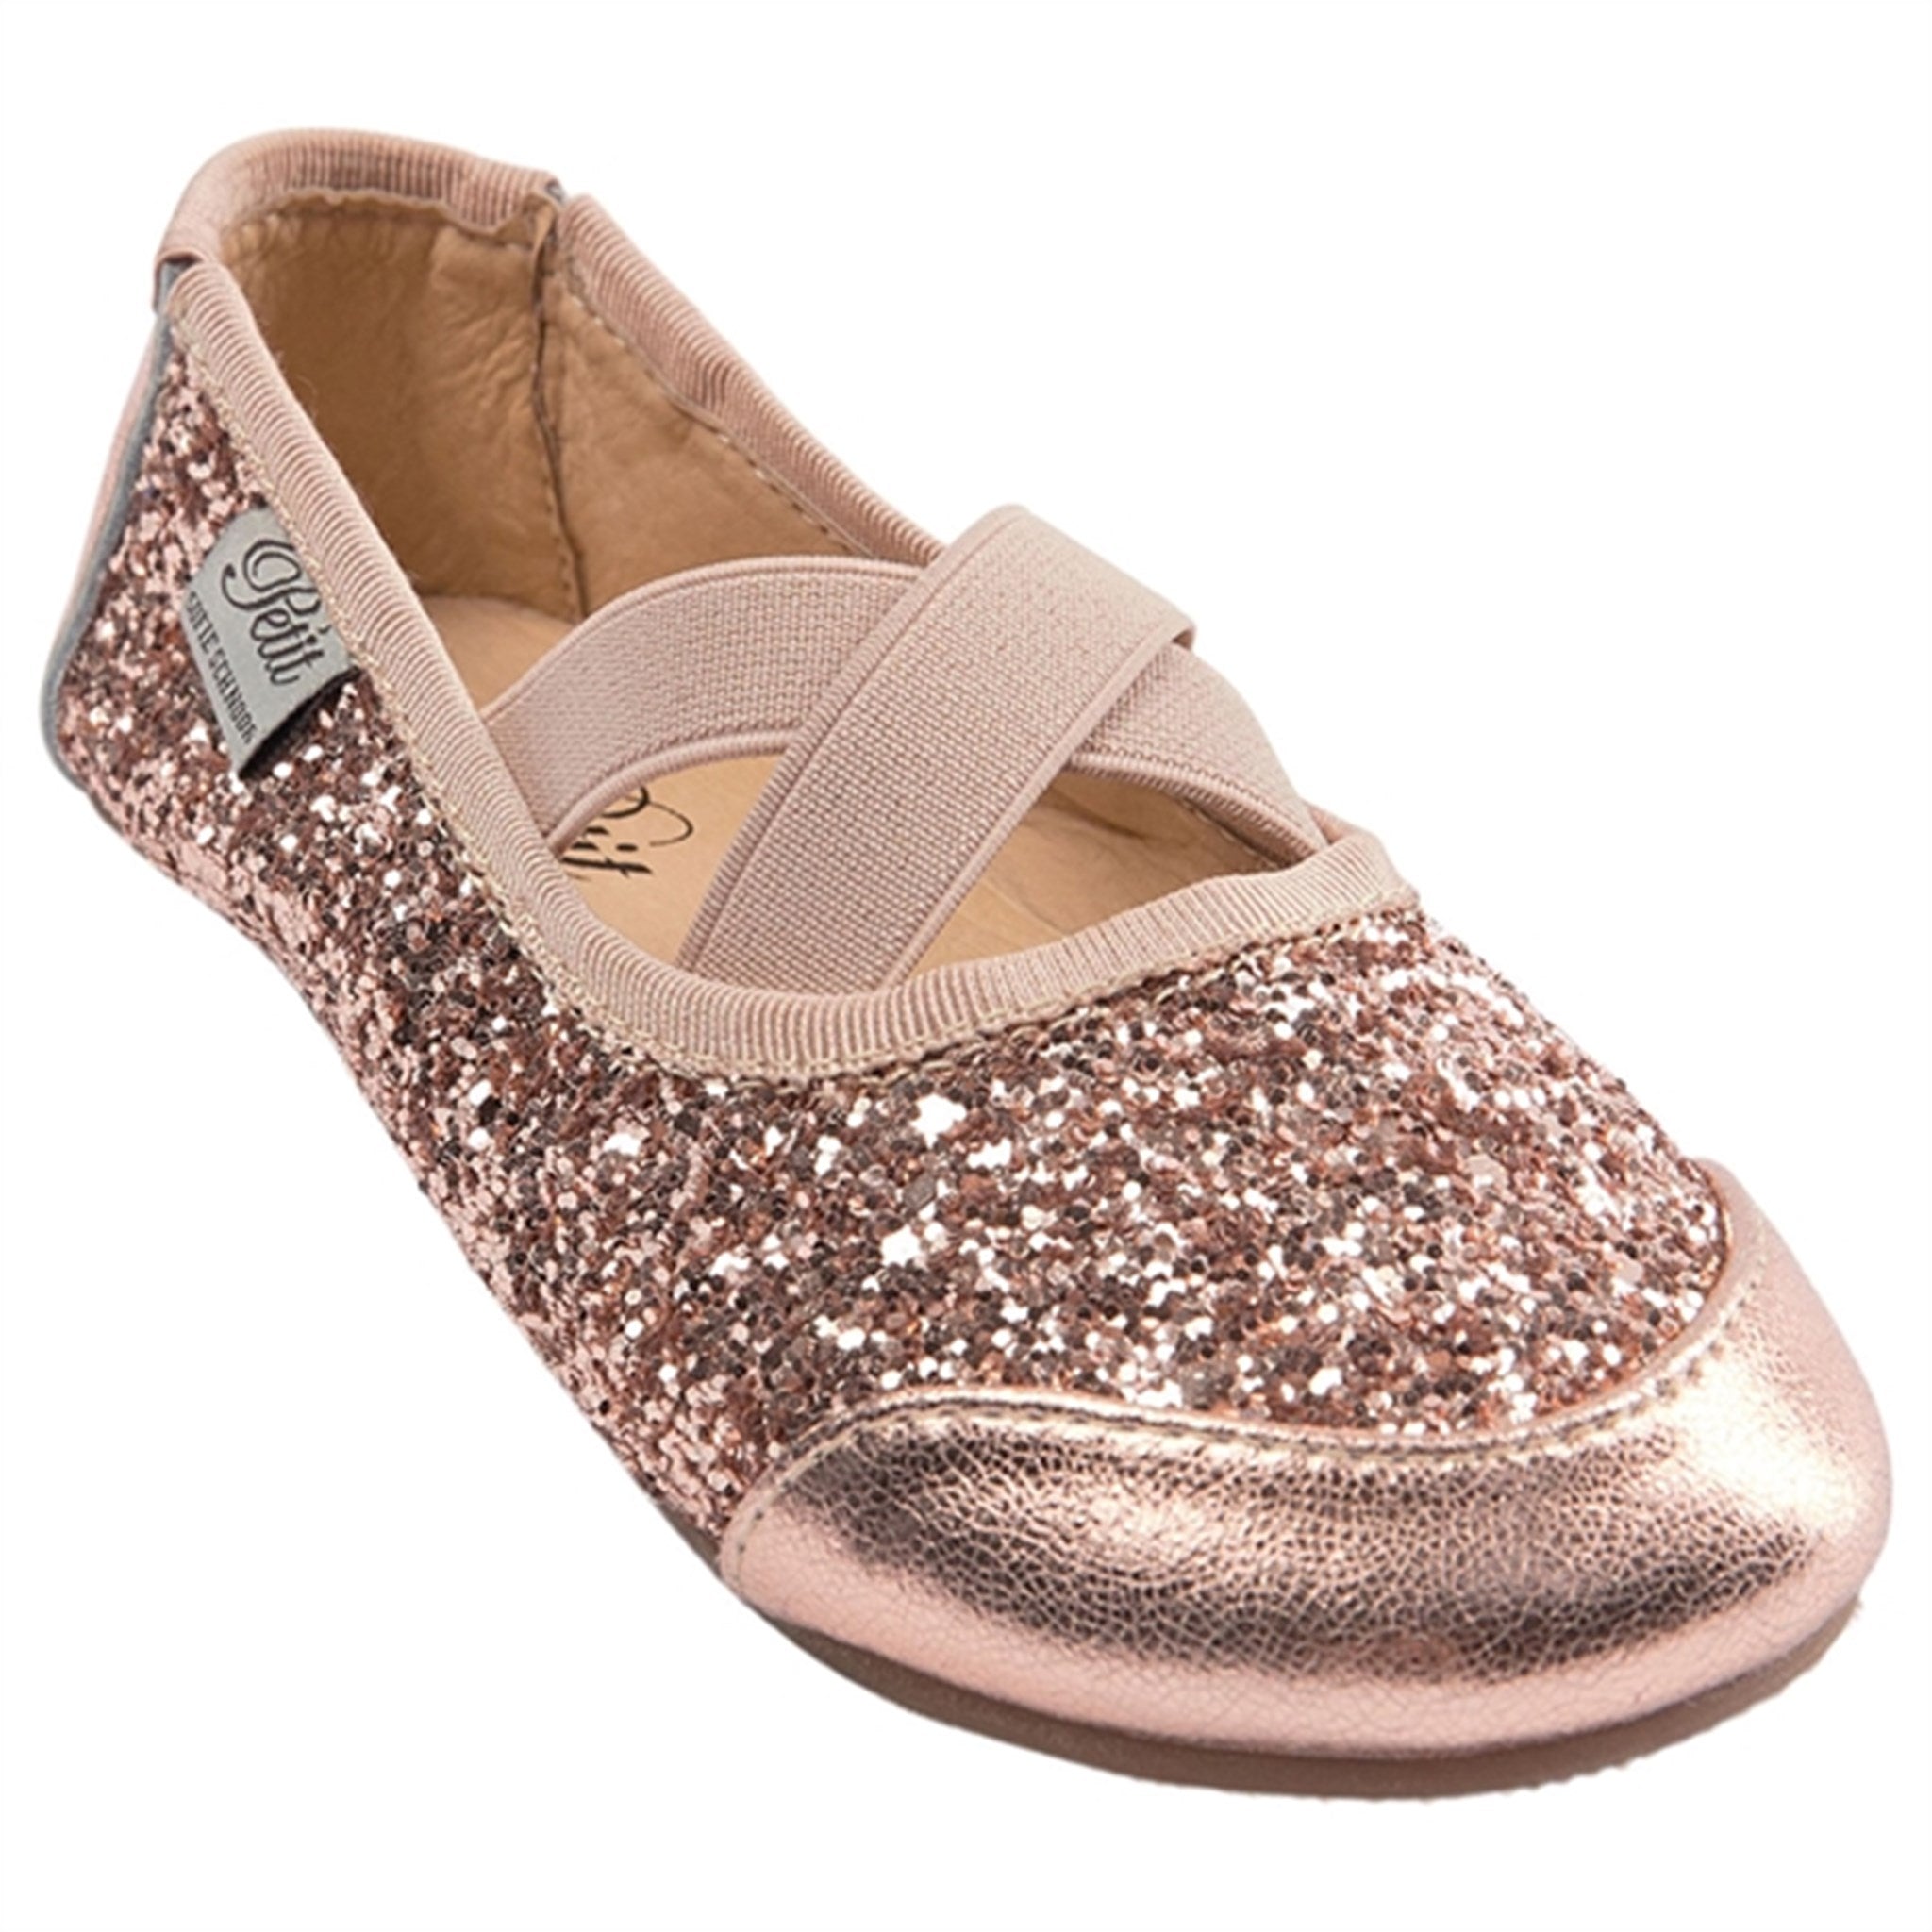 Sofie Schnoor Ballerina Indoors Shoes Peach